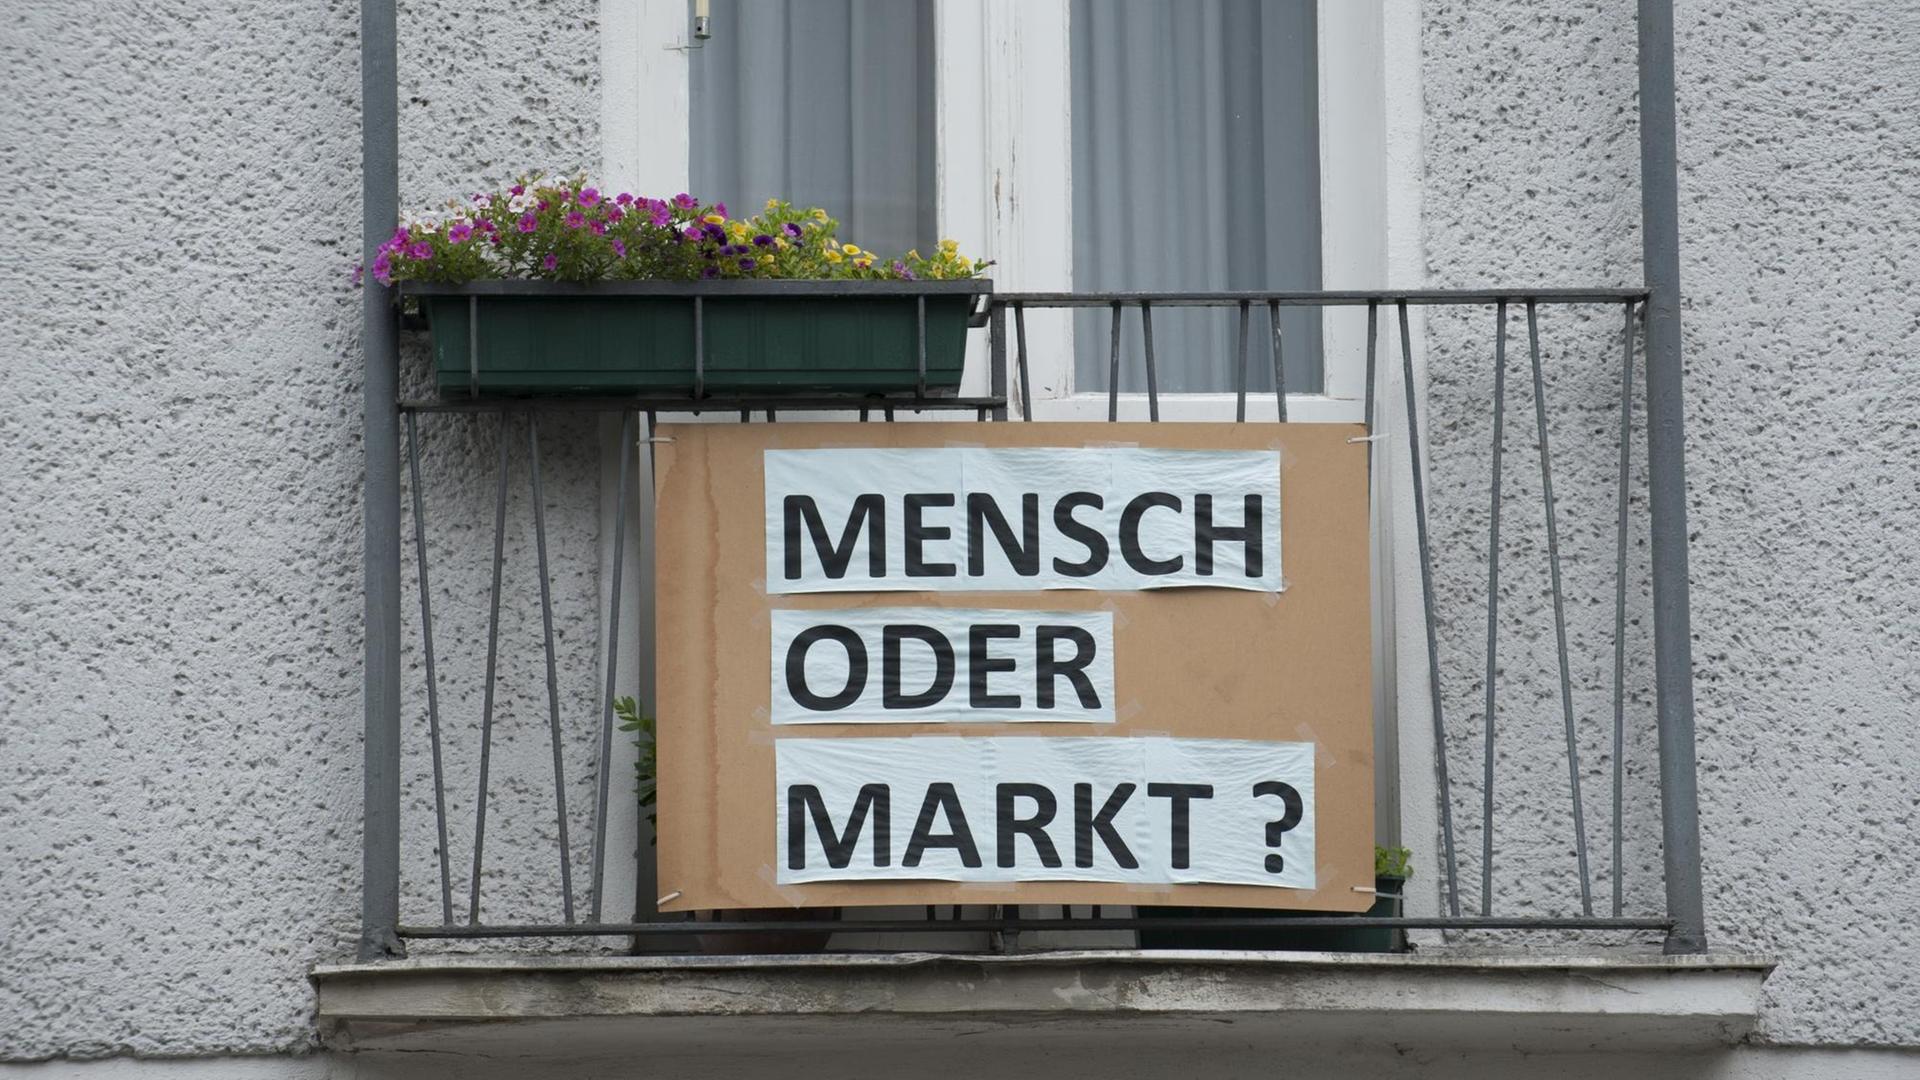 Plakat an einem Berliner Haus: "Markt oder Mensch?"